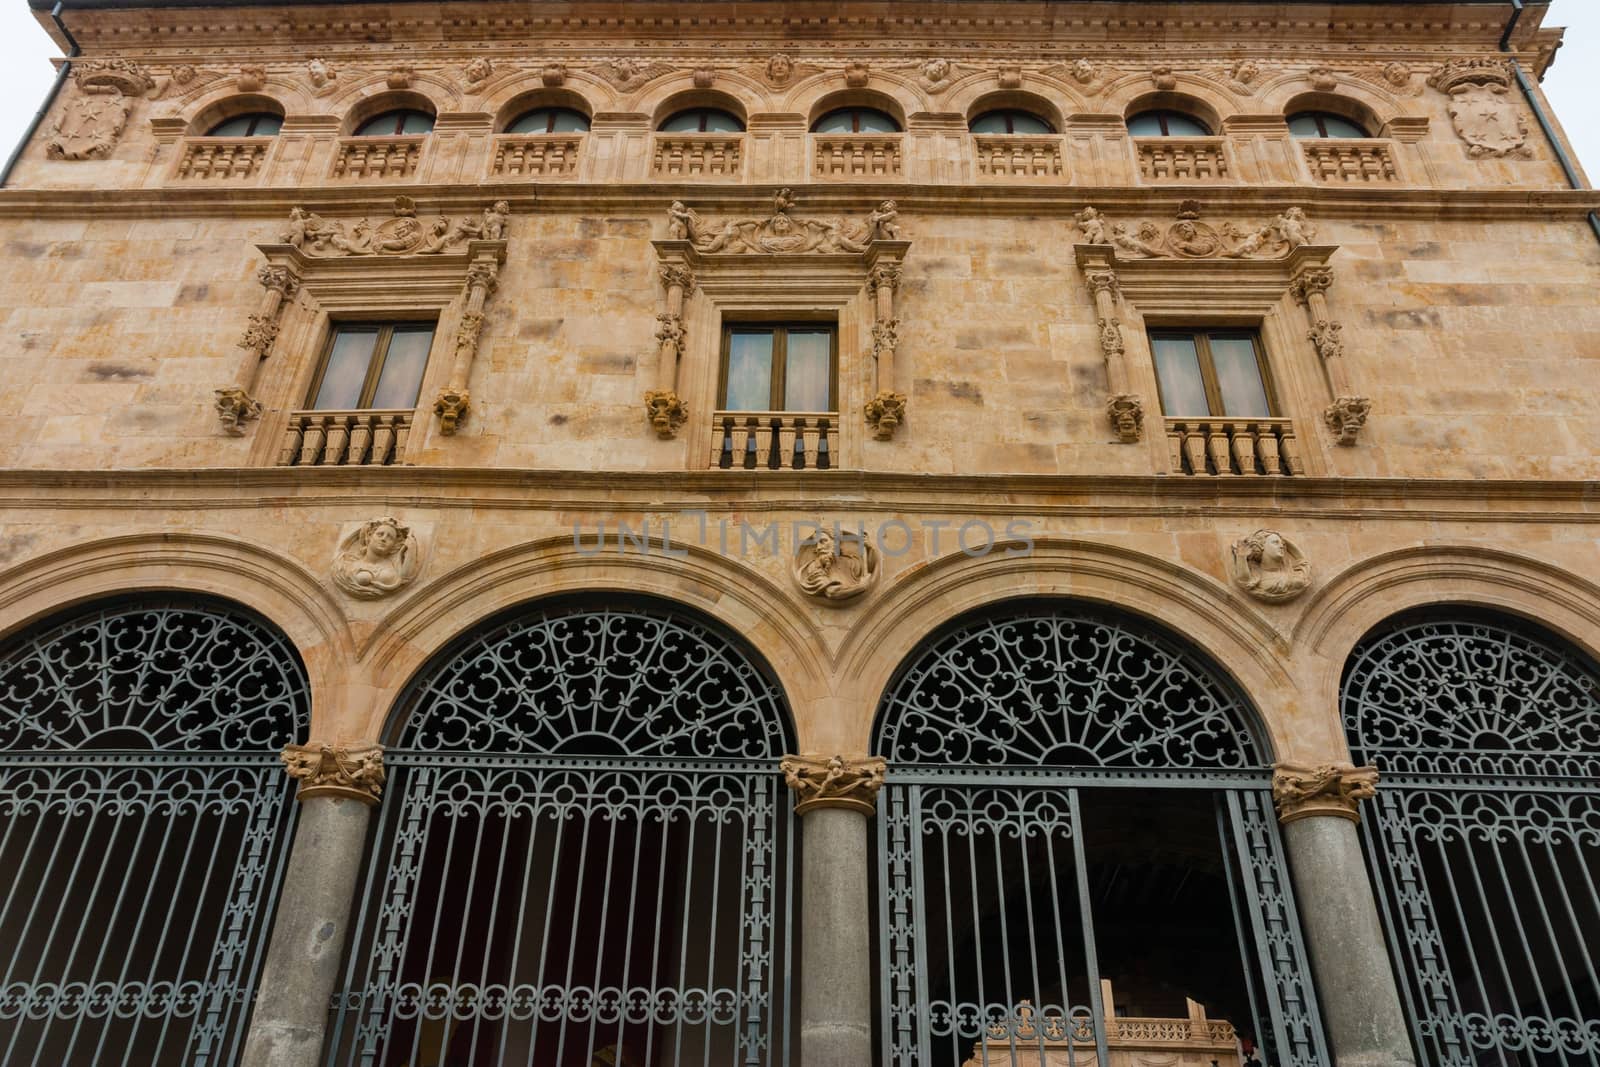 Main facade of La Salina Palace in Salamanca by imagsan